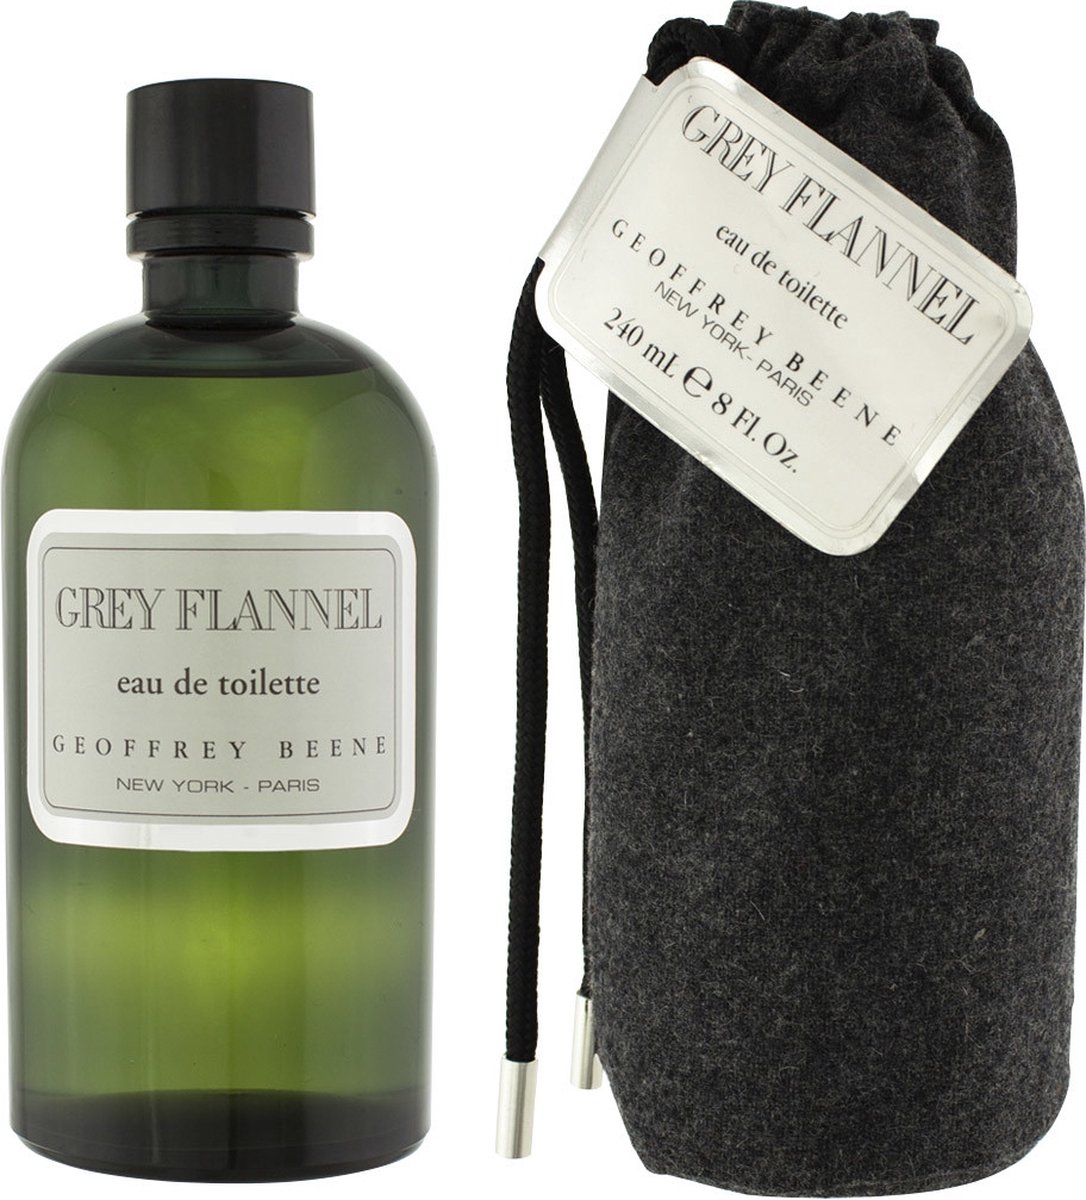 GREY FLANNEL by Geoffrey Beene 240 ml - Eau De Toilette